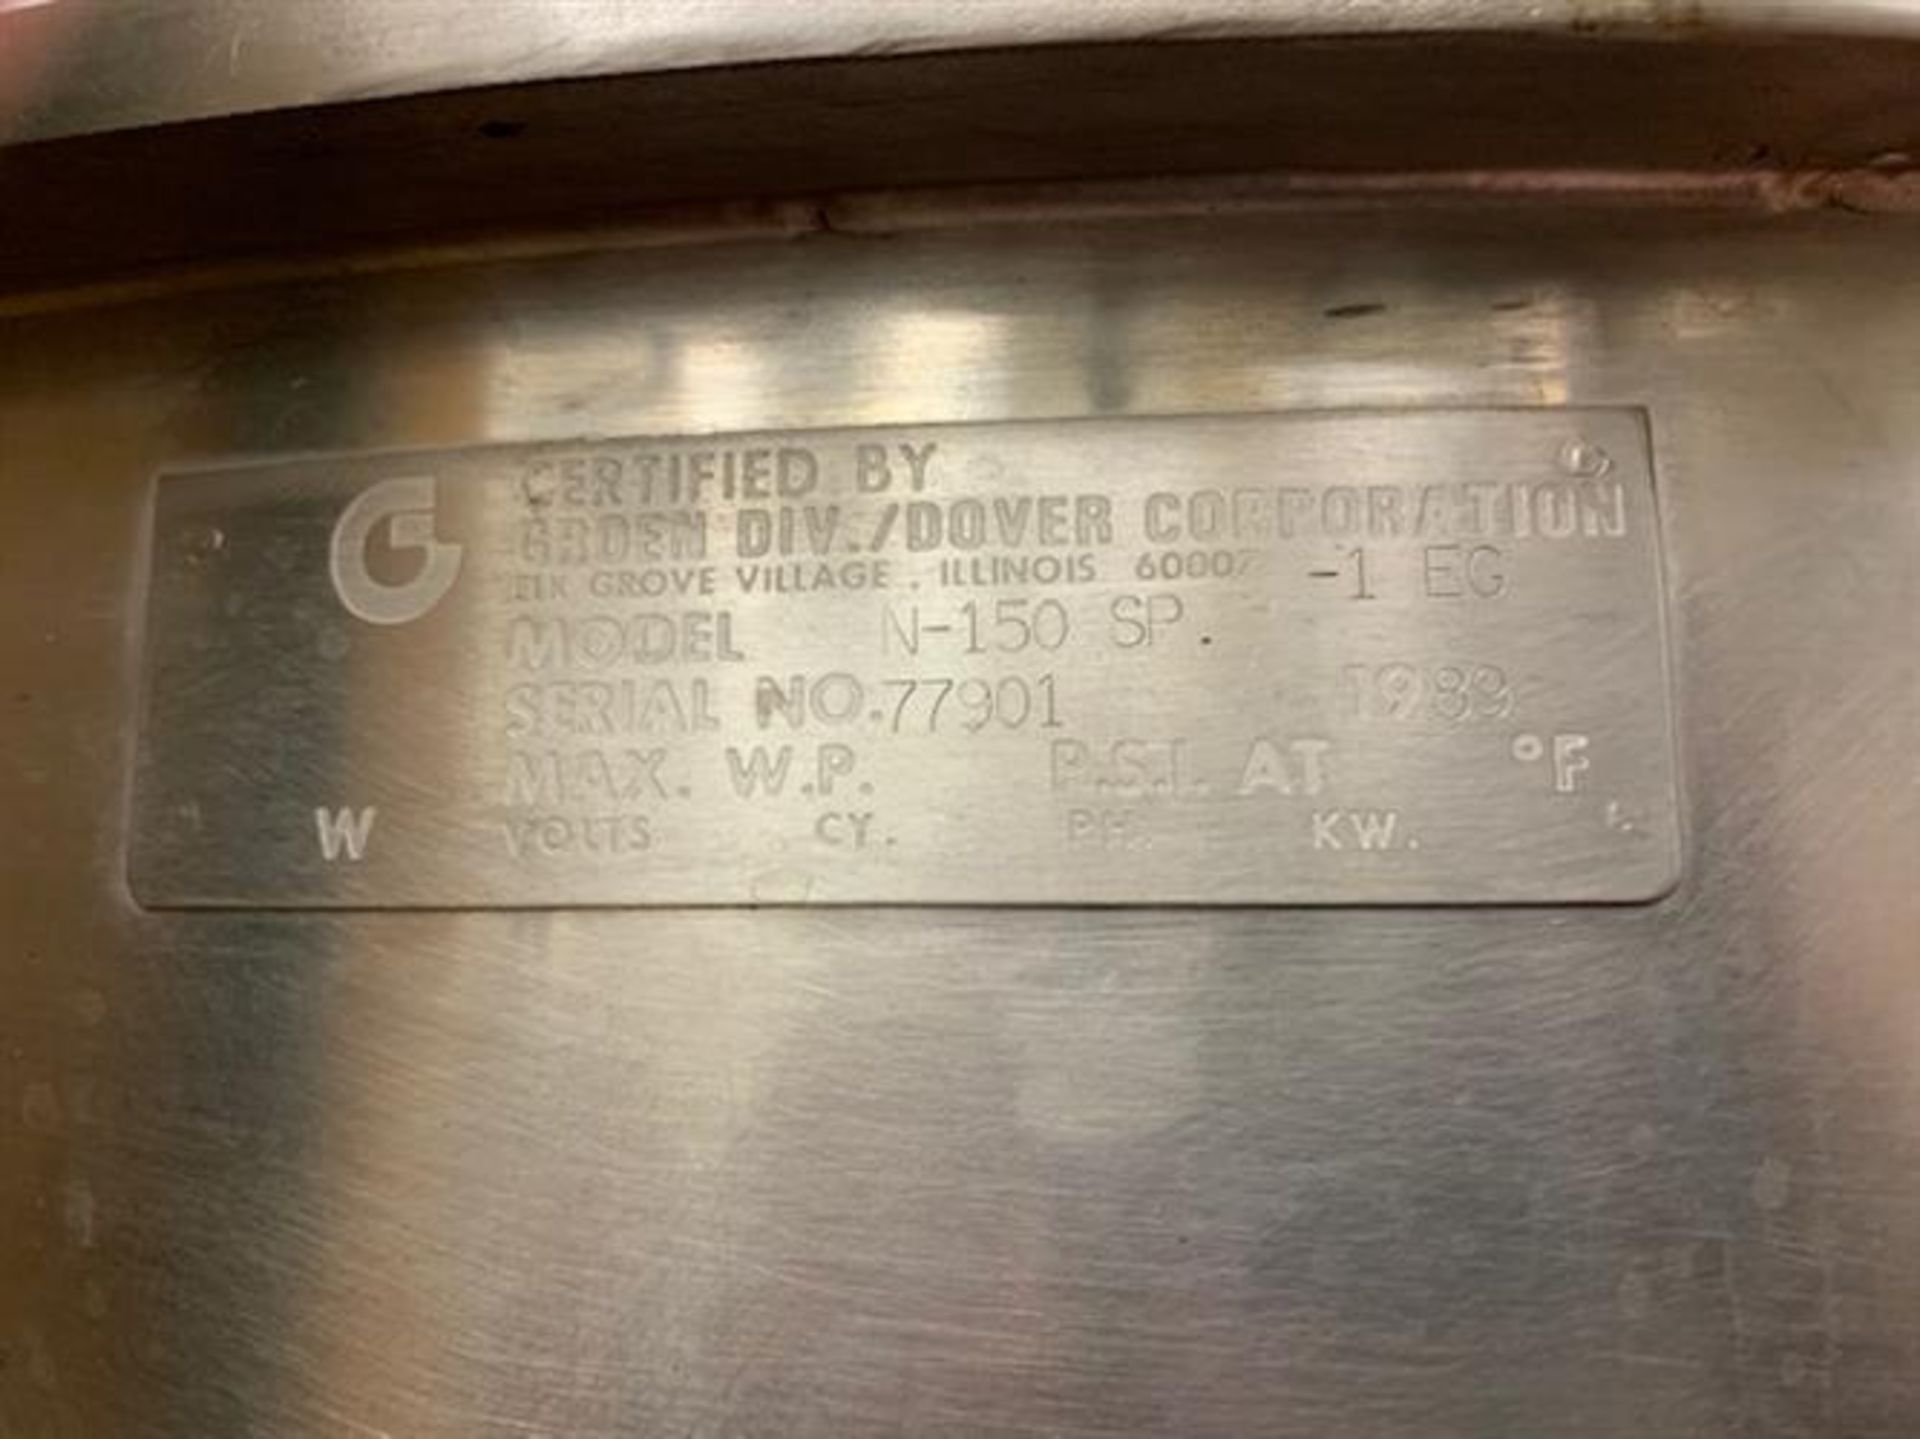 Groen N-150 SP 150 Gallon Stainless Steel Kettle - 42” diameter x 34” deep - Not jacketed - Bridge - Image 2 of 3